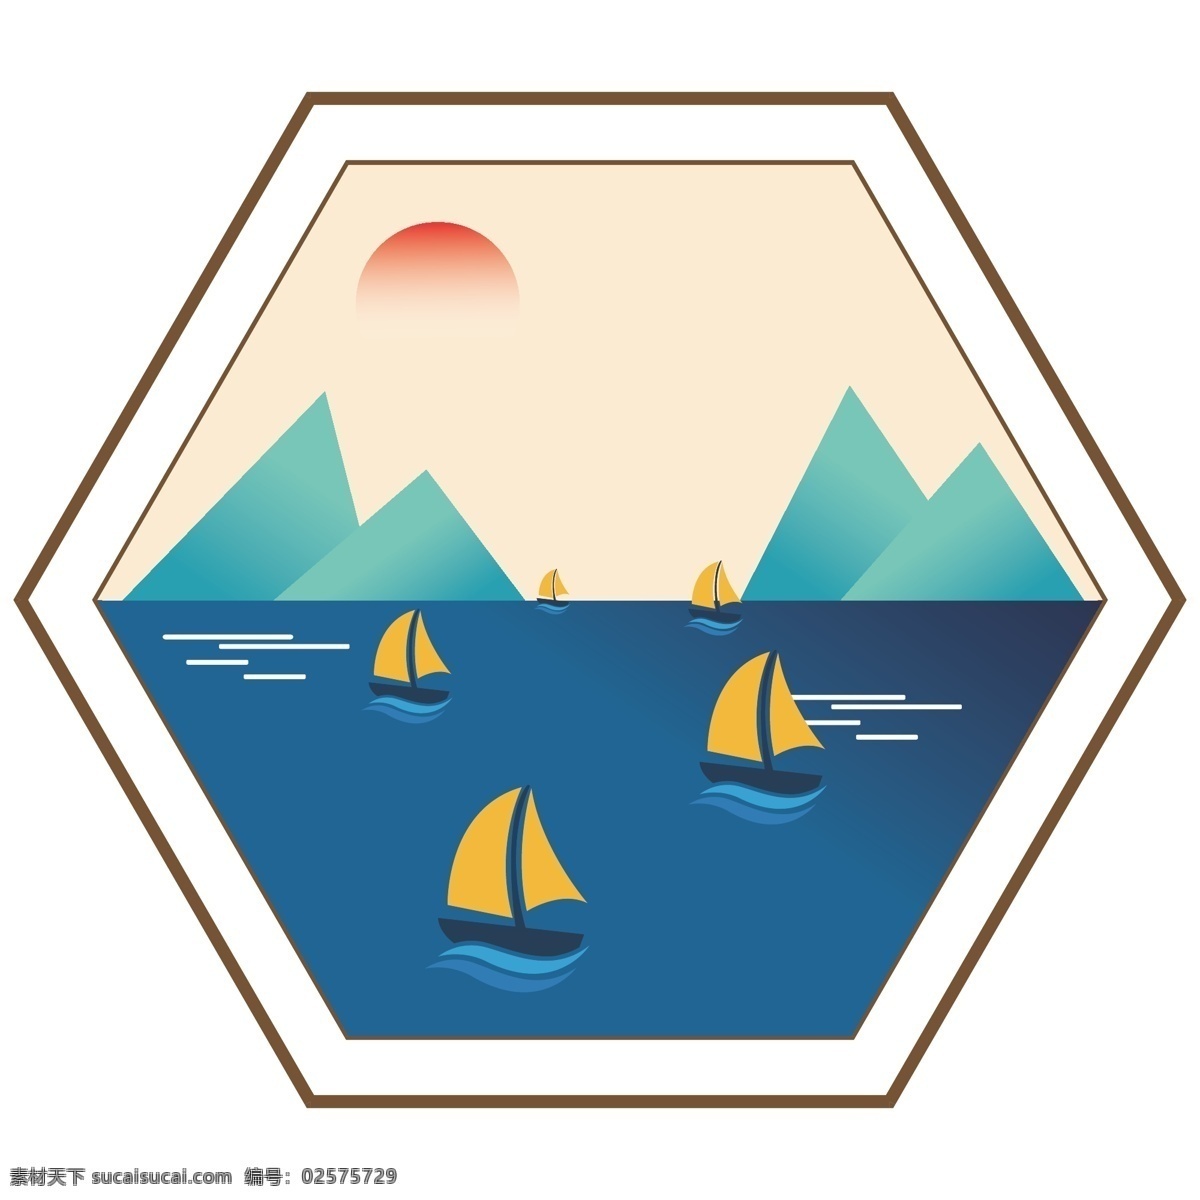 六边形 窗格 山水 装饰画 山水画 船帆 大山 落日 湖泊 室内广告设计